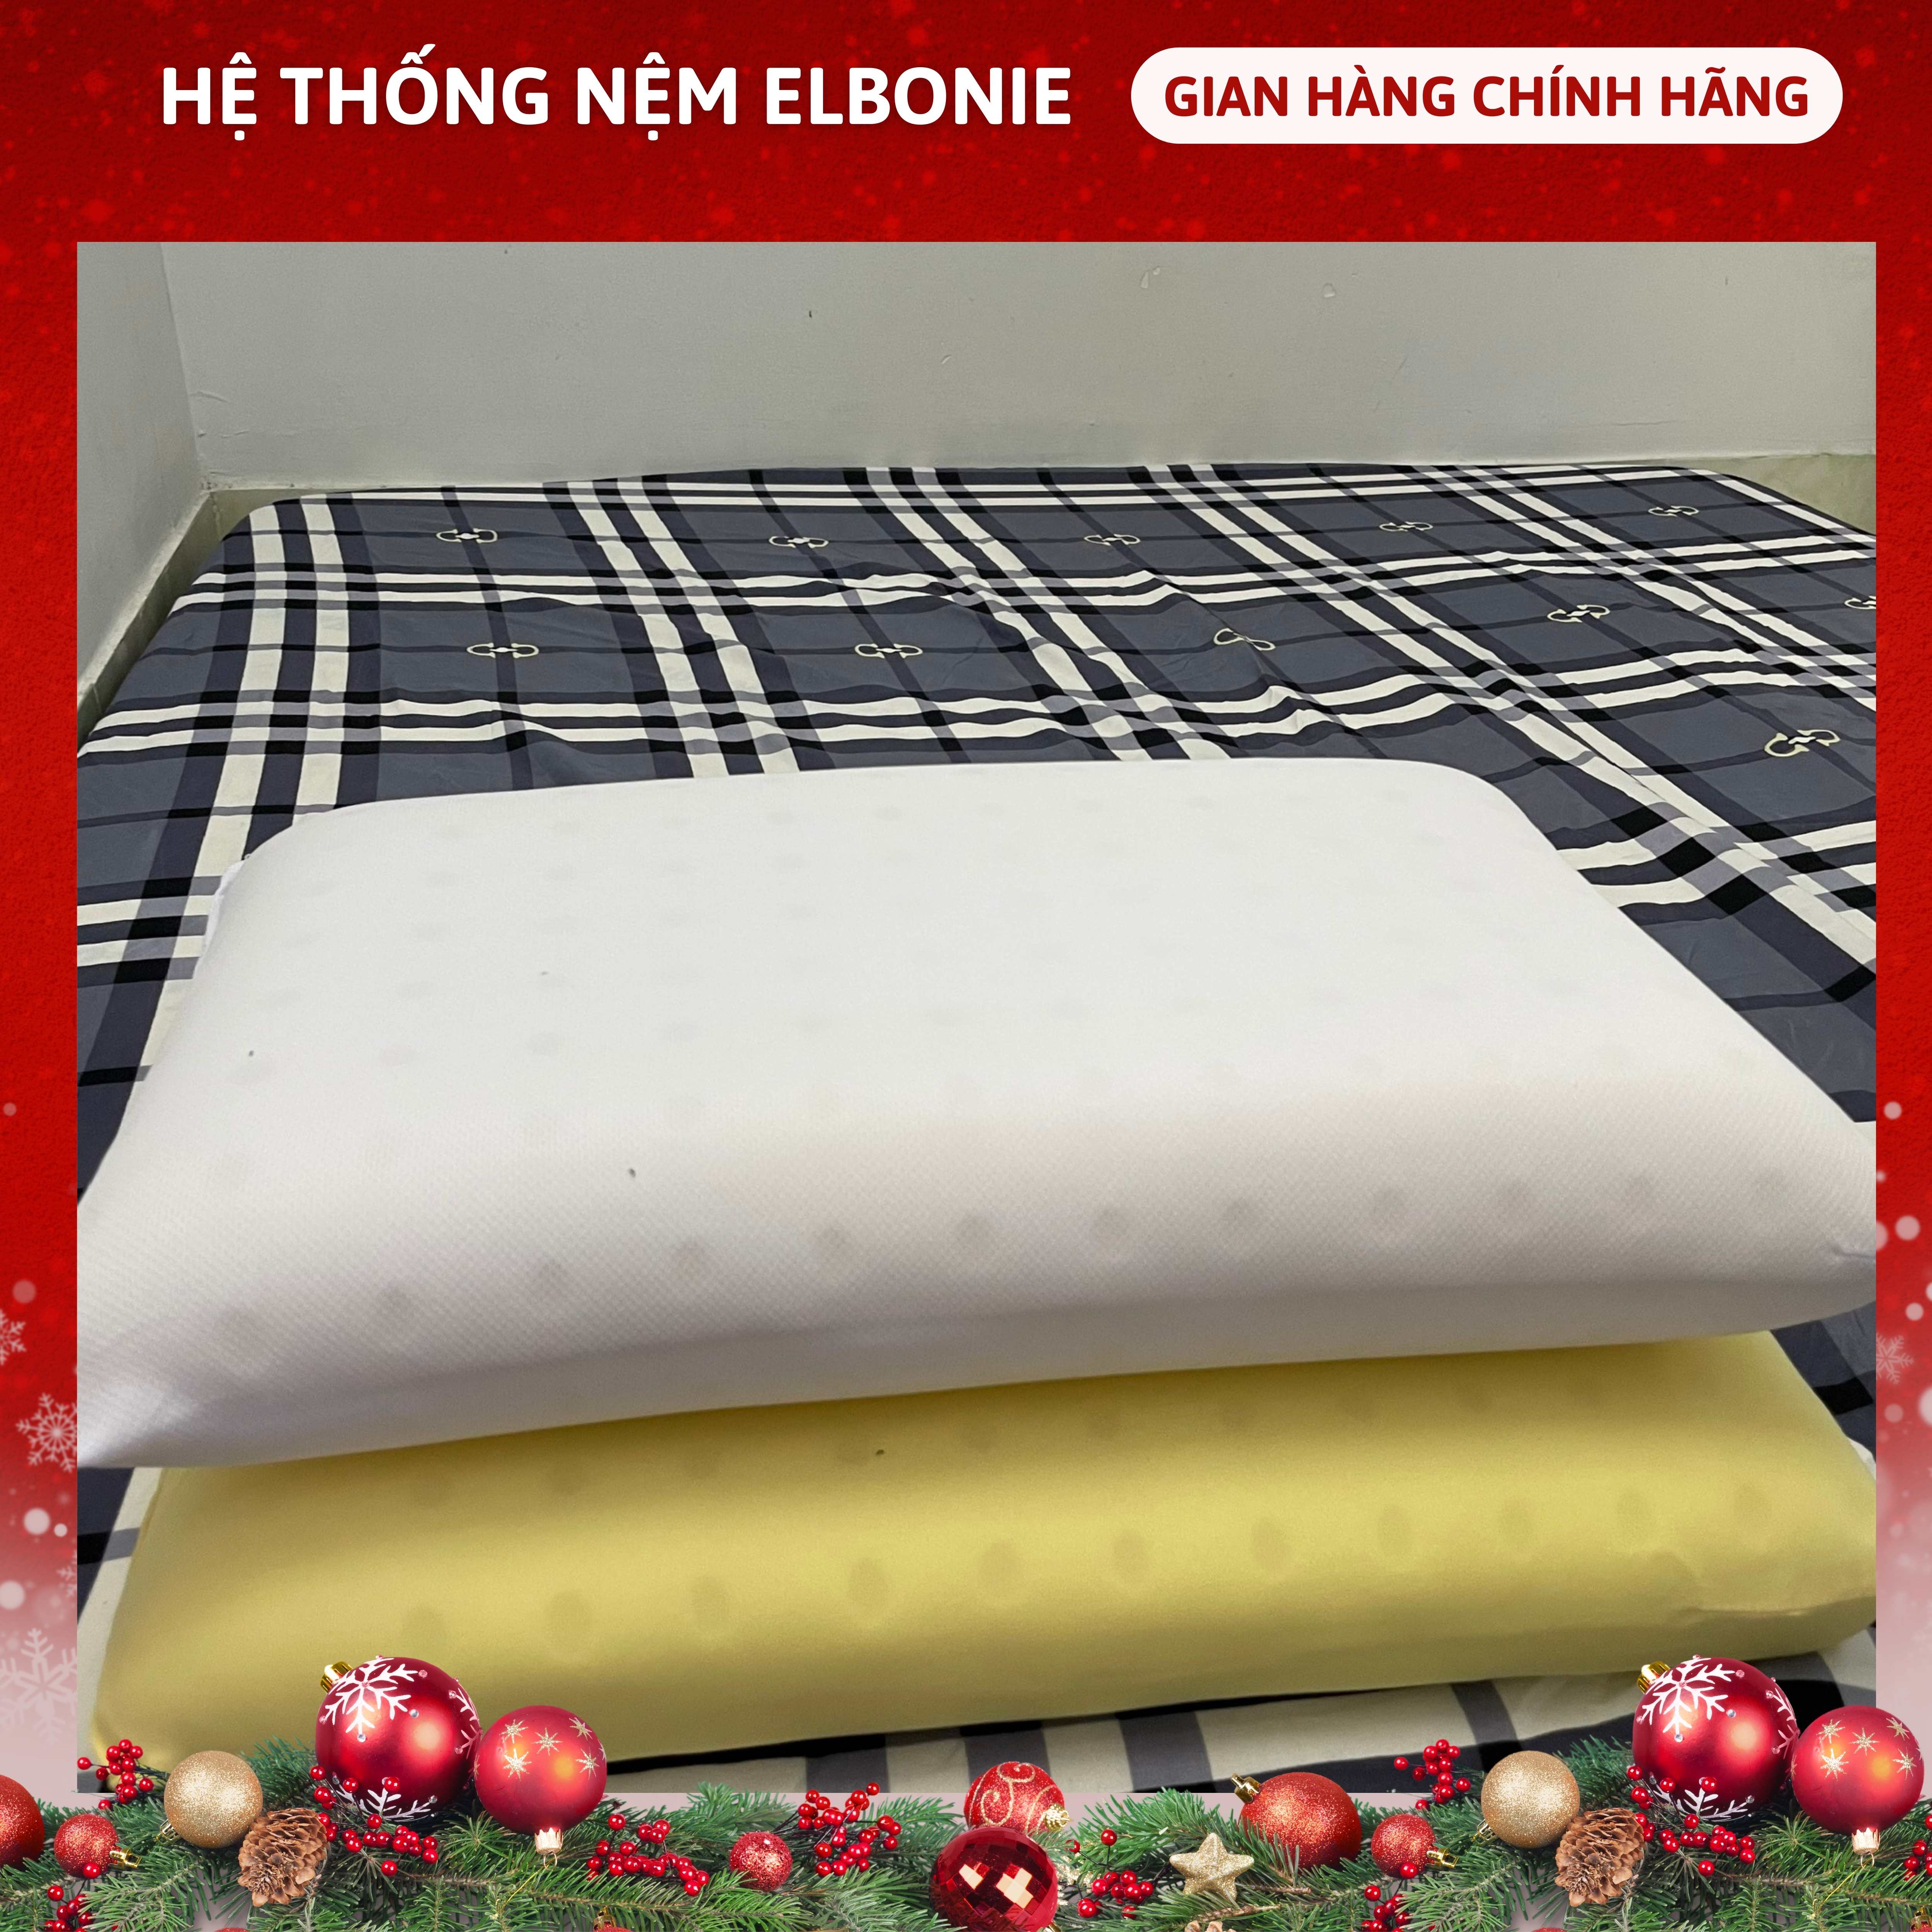 SO CHEAP PRICE - Rang Dong Latex Pillow